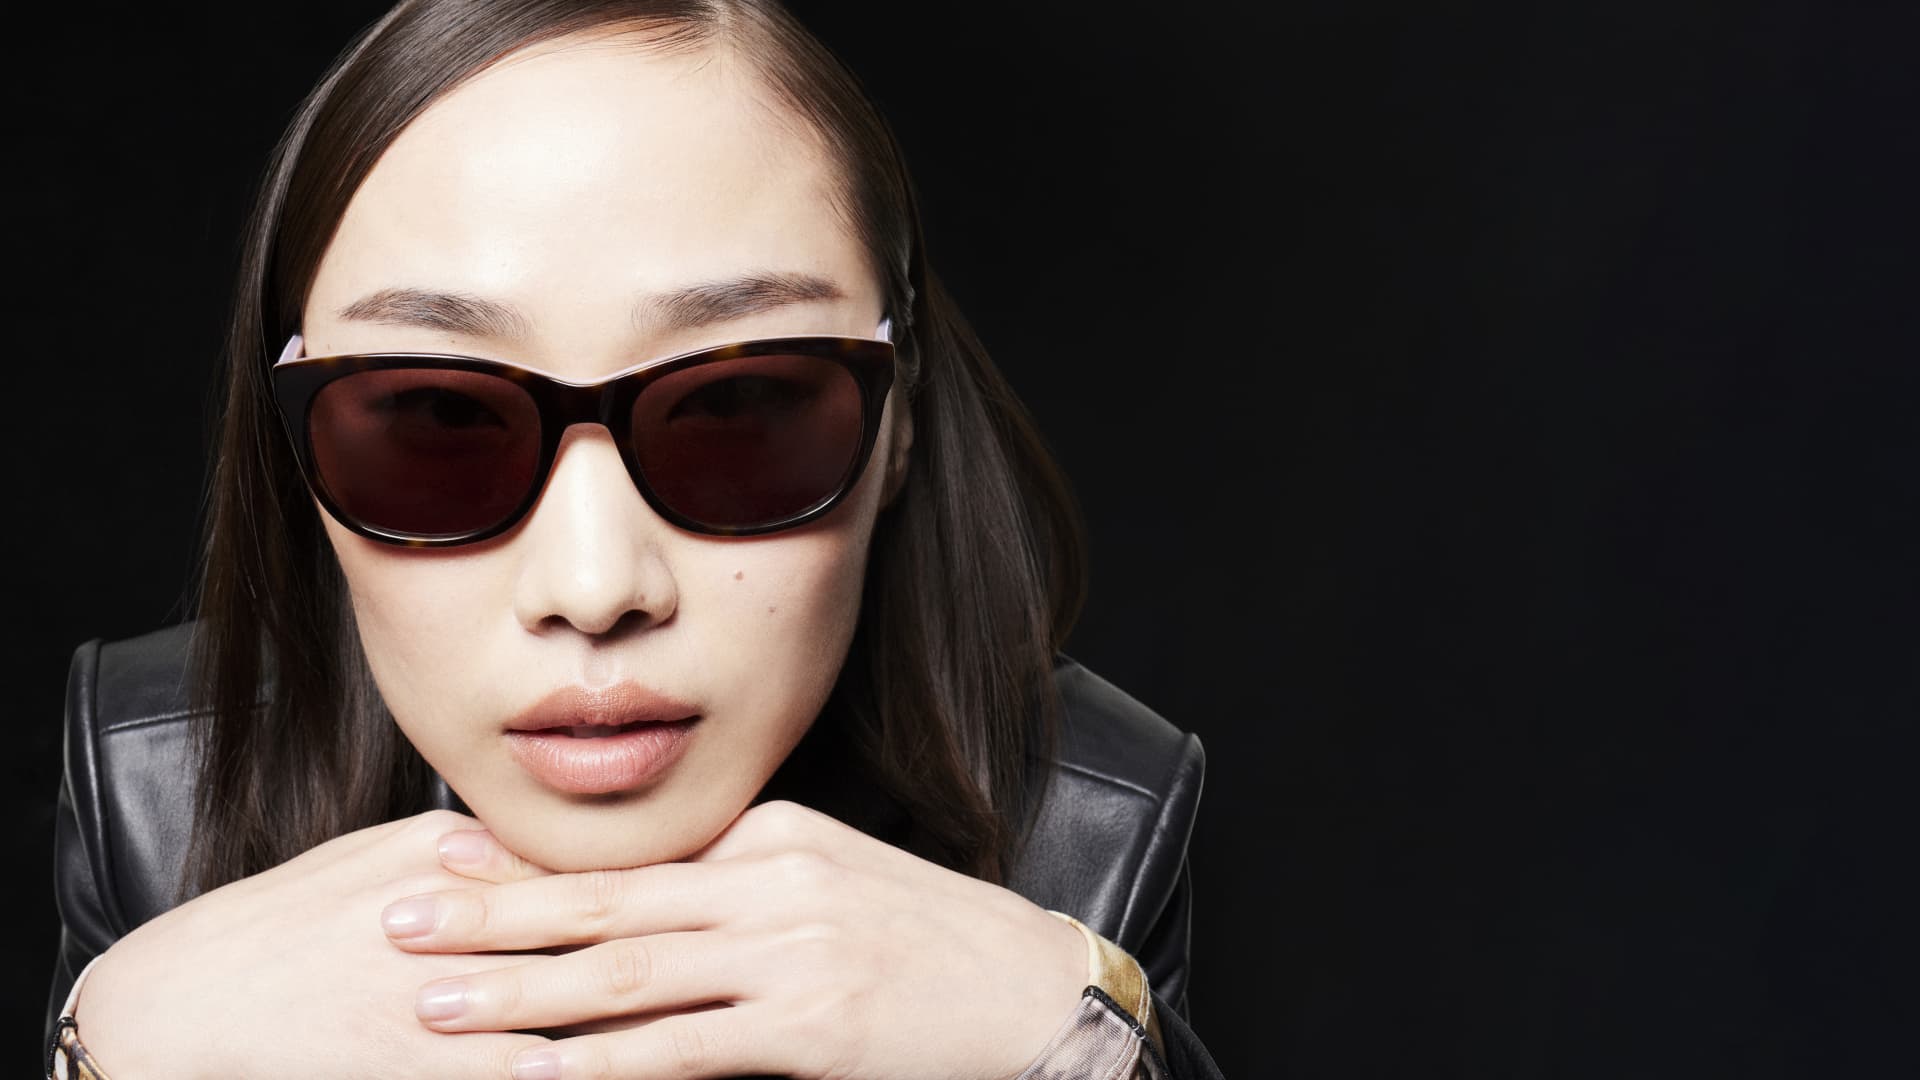 Woman wearing cat eye shaped sunglasses